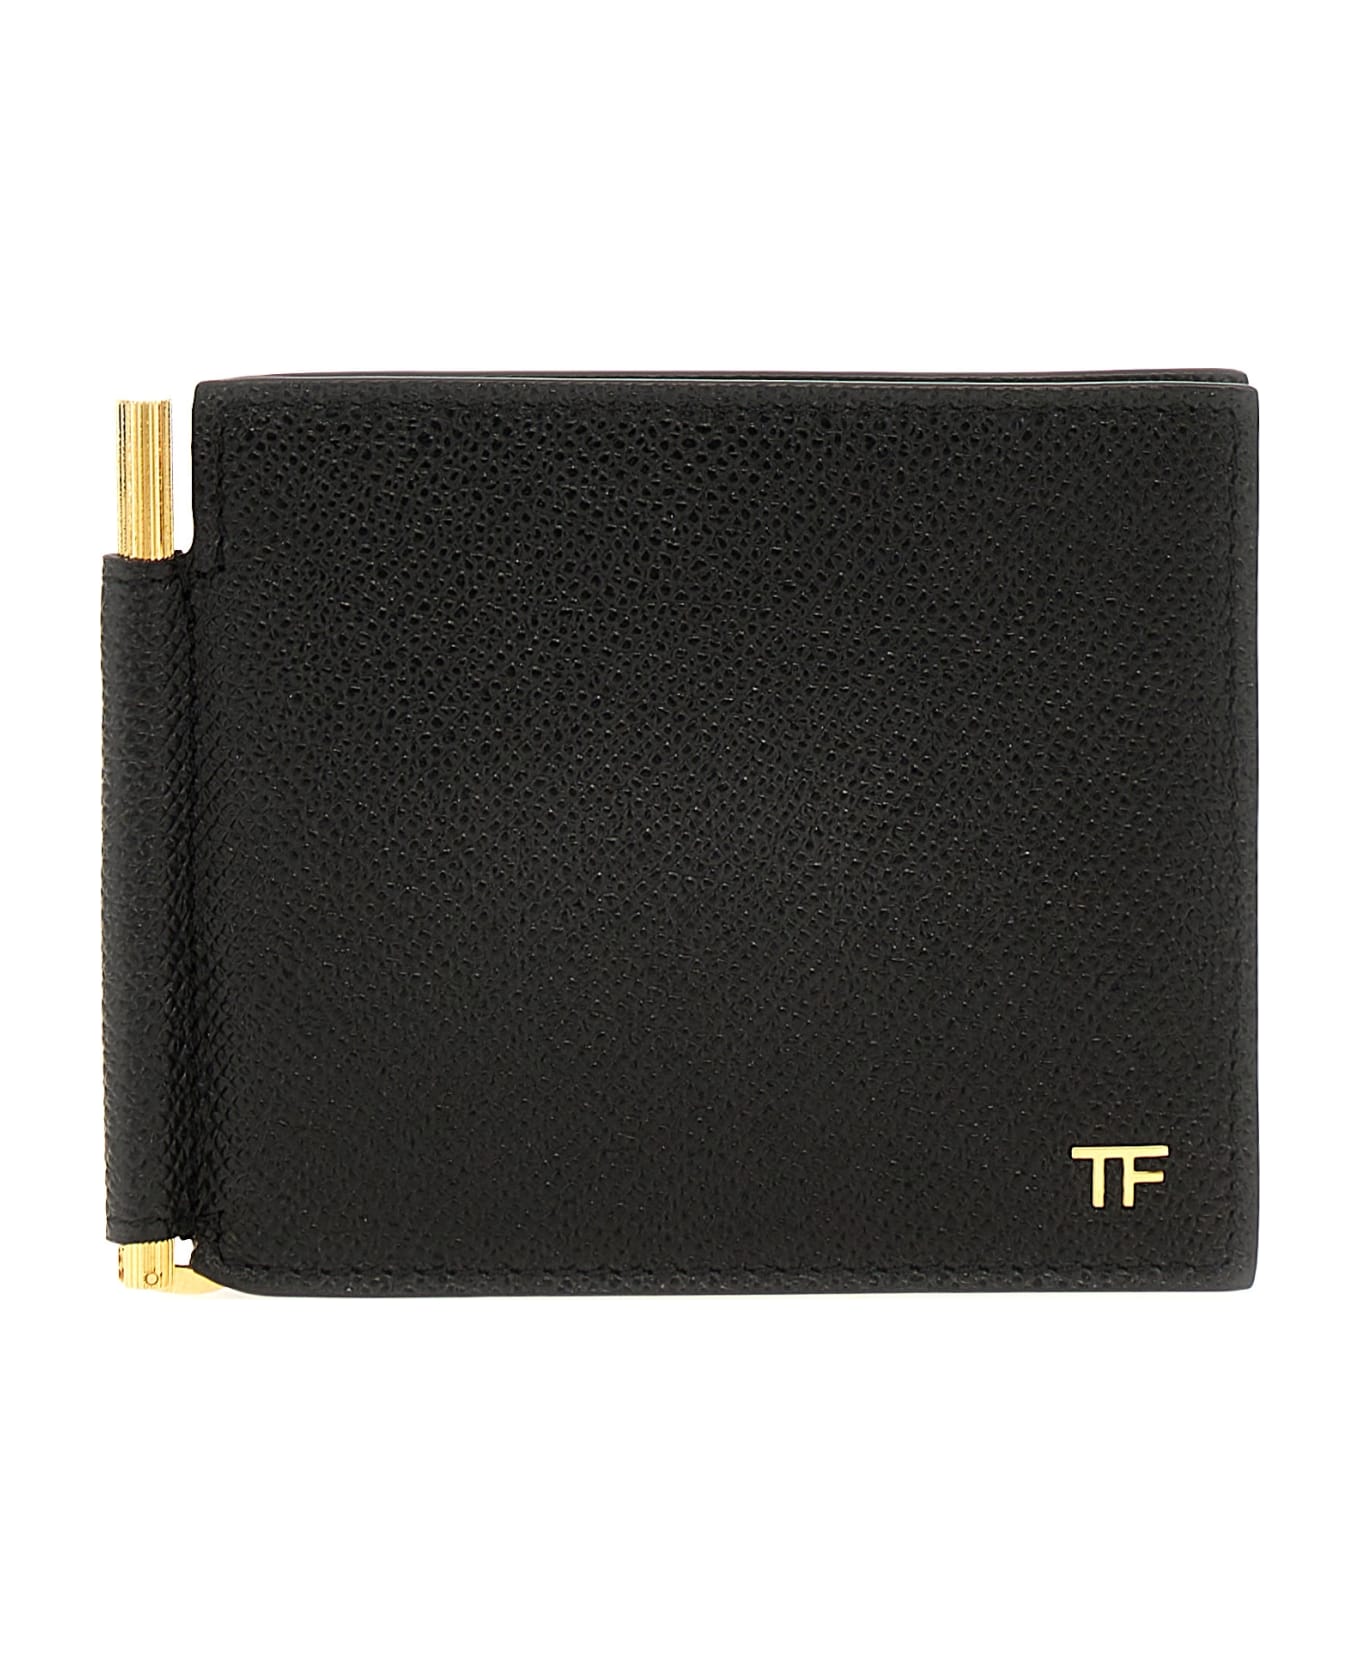 Tom Ford Logo Leather Cardholder - Black